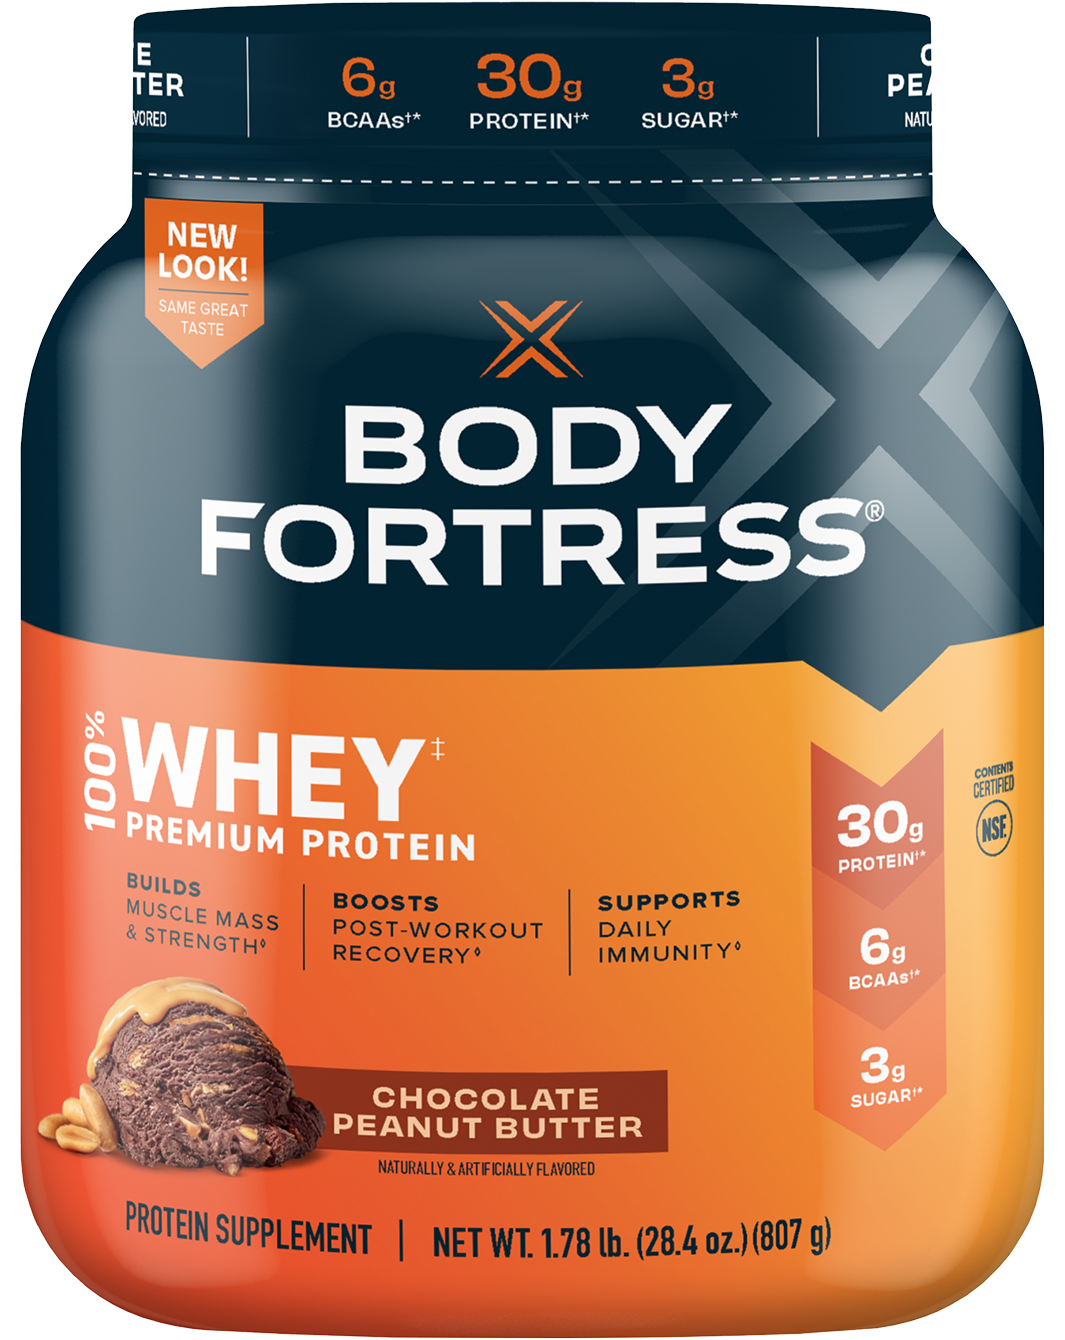 100% Whey, Premium Protein Powder, Chocolate Peanut Butter